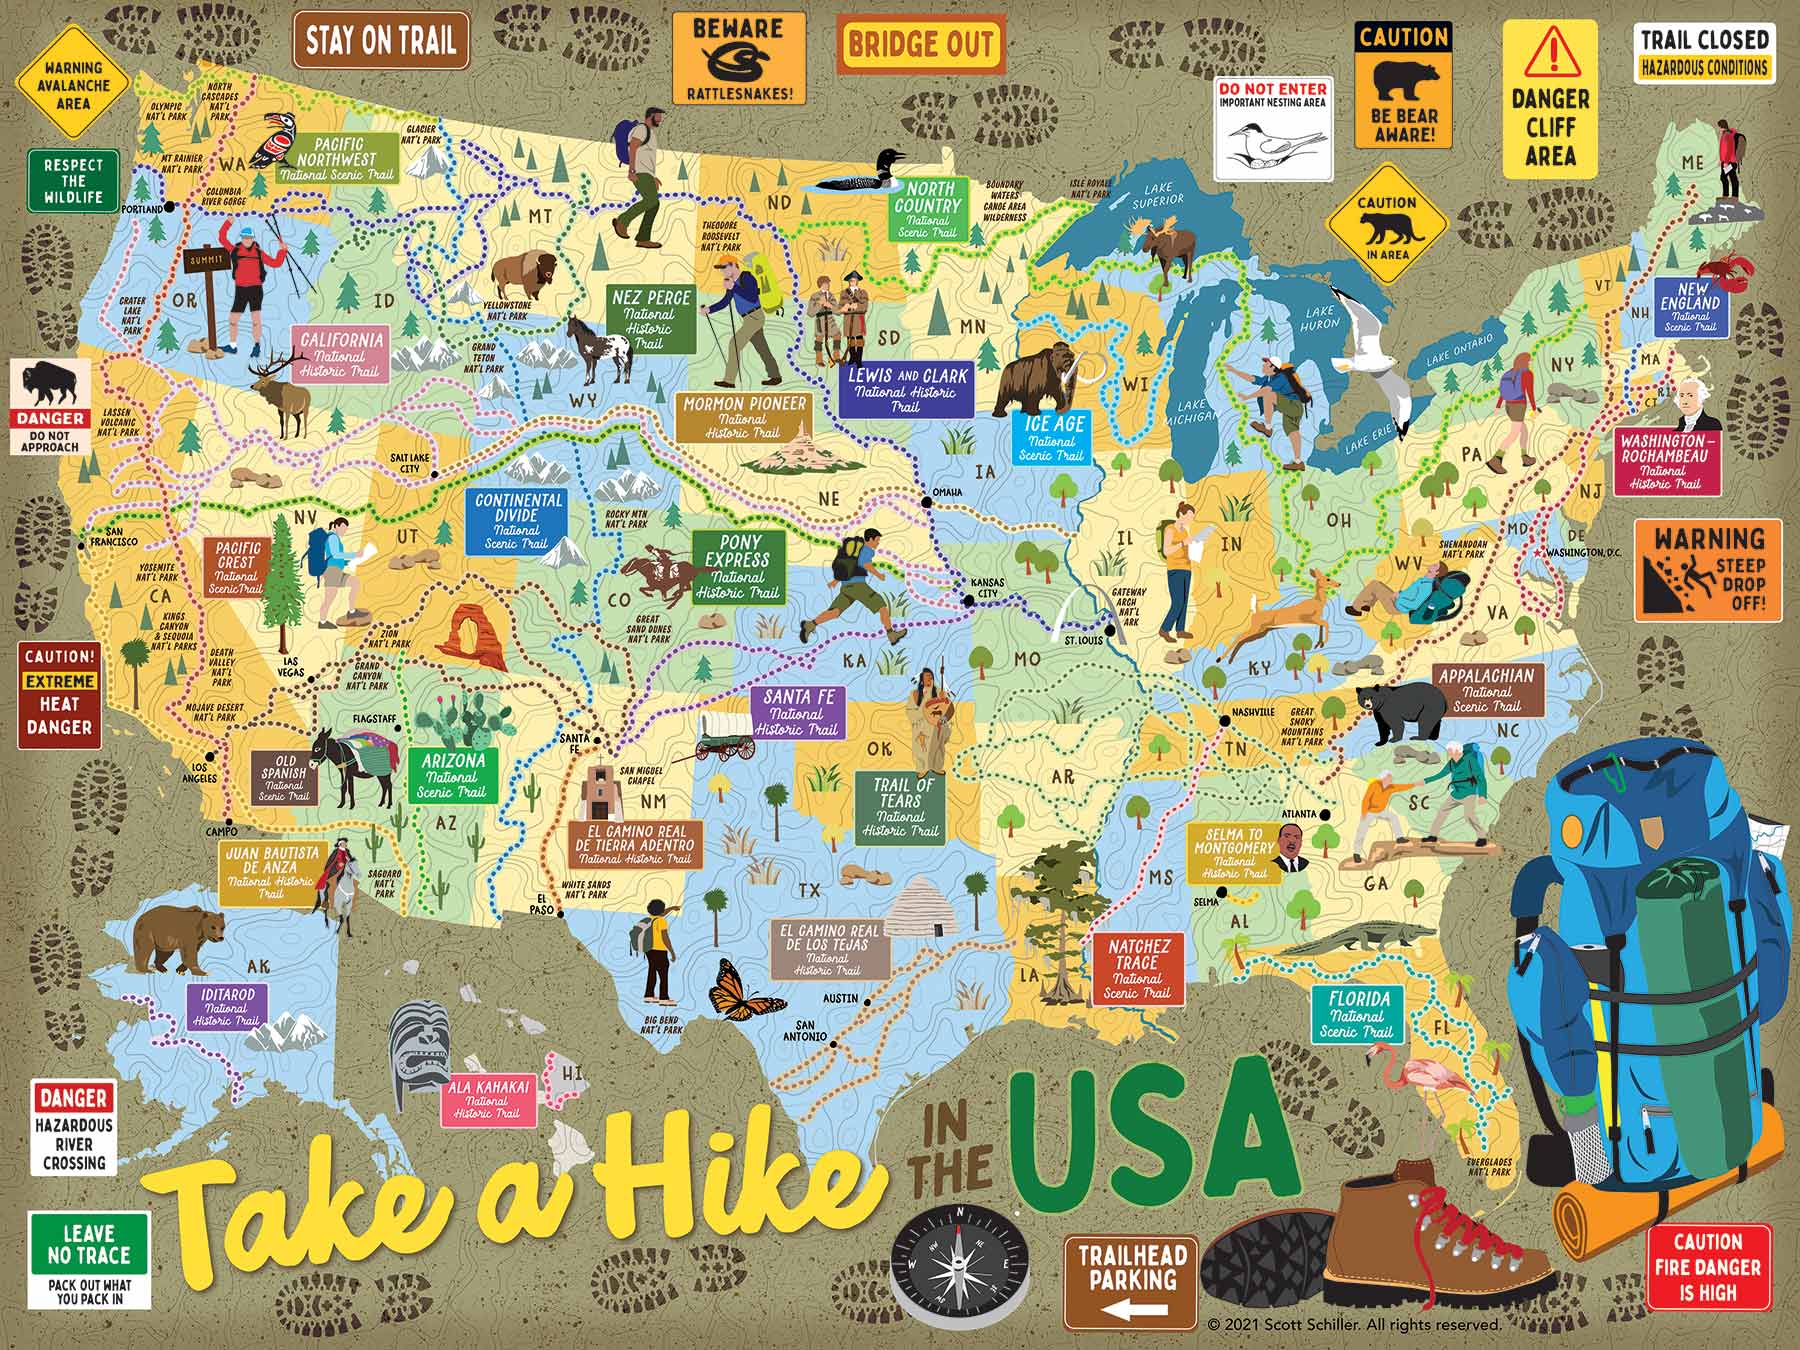 Take A Hike USA 500 Piece Jigsaw Puzzle